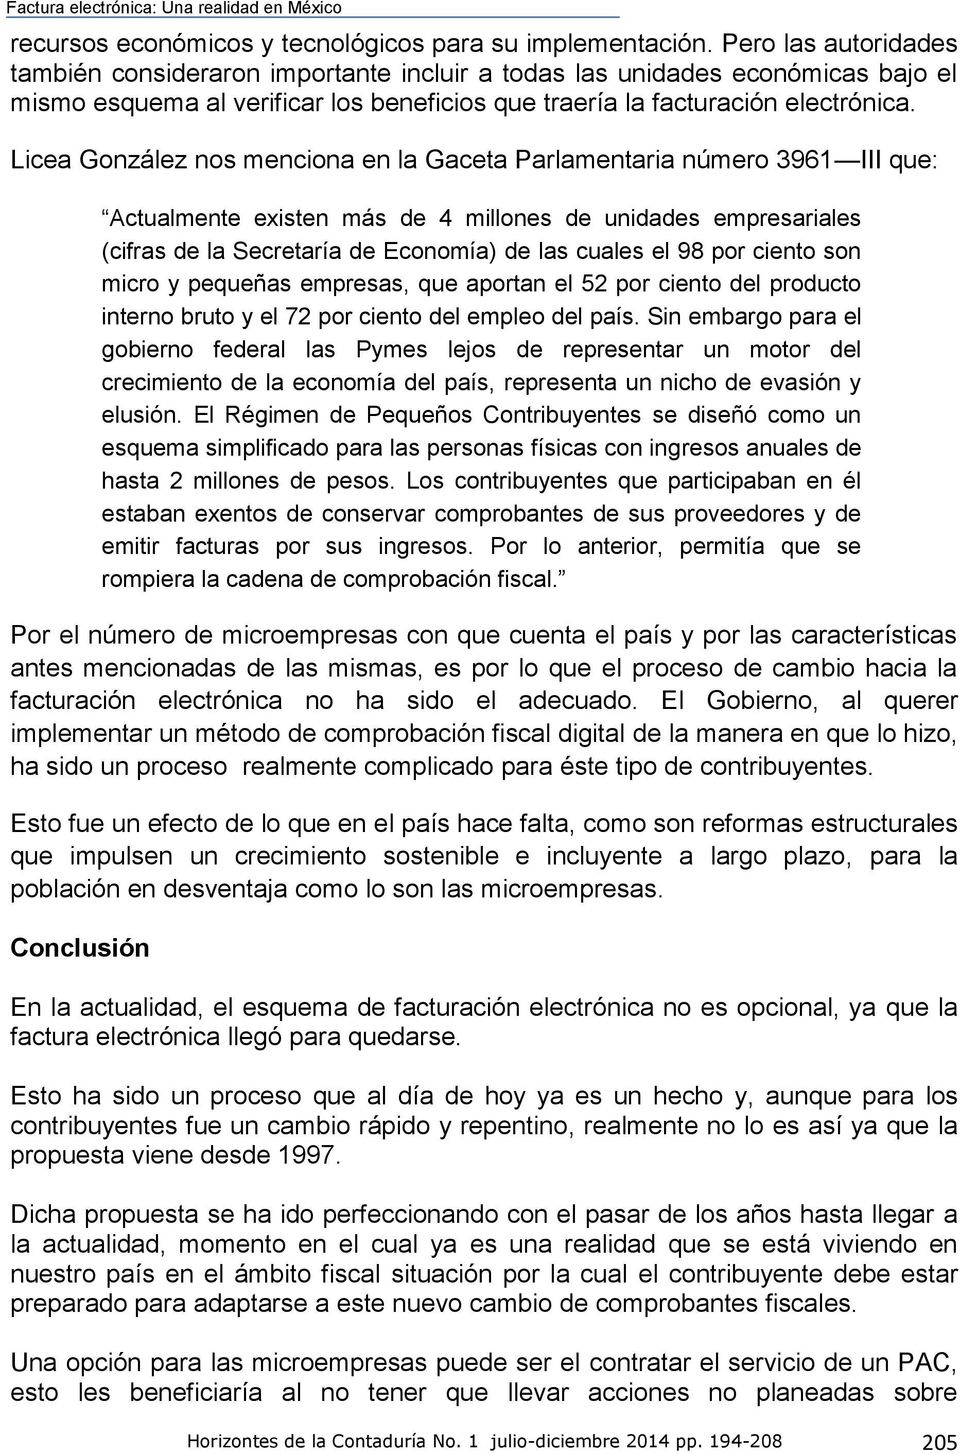 Licea González nos menciona en la Gaceta Parlamentaria número 3961 III que: Actualmente existen más de 4 millones de unidades empresariales (cifras de la Secretaría de Economía) de las cuales el 98